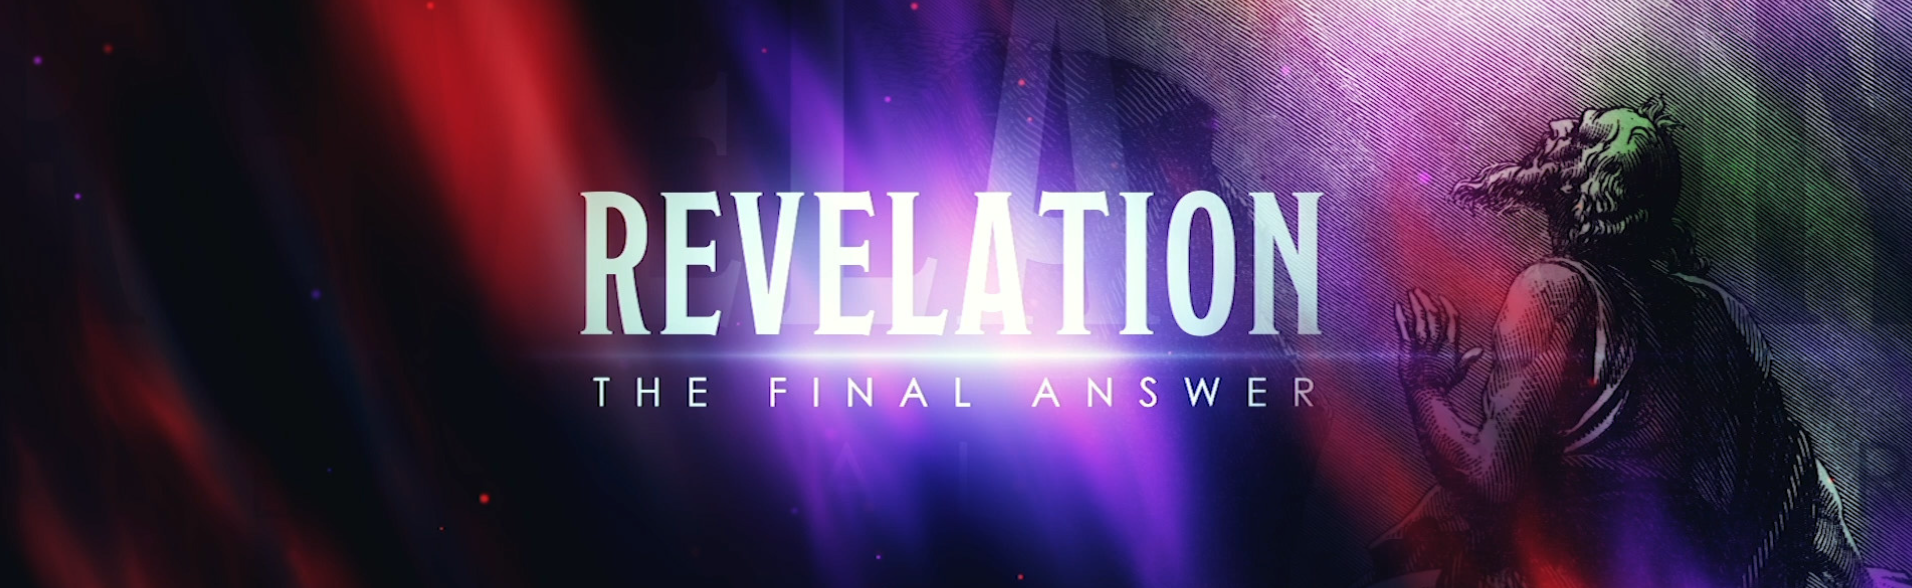 Revelation Cover-1